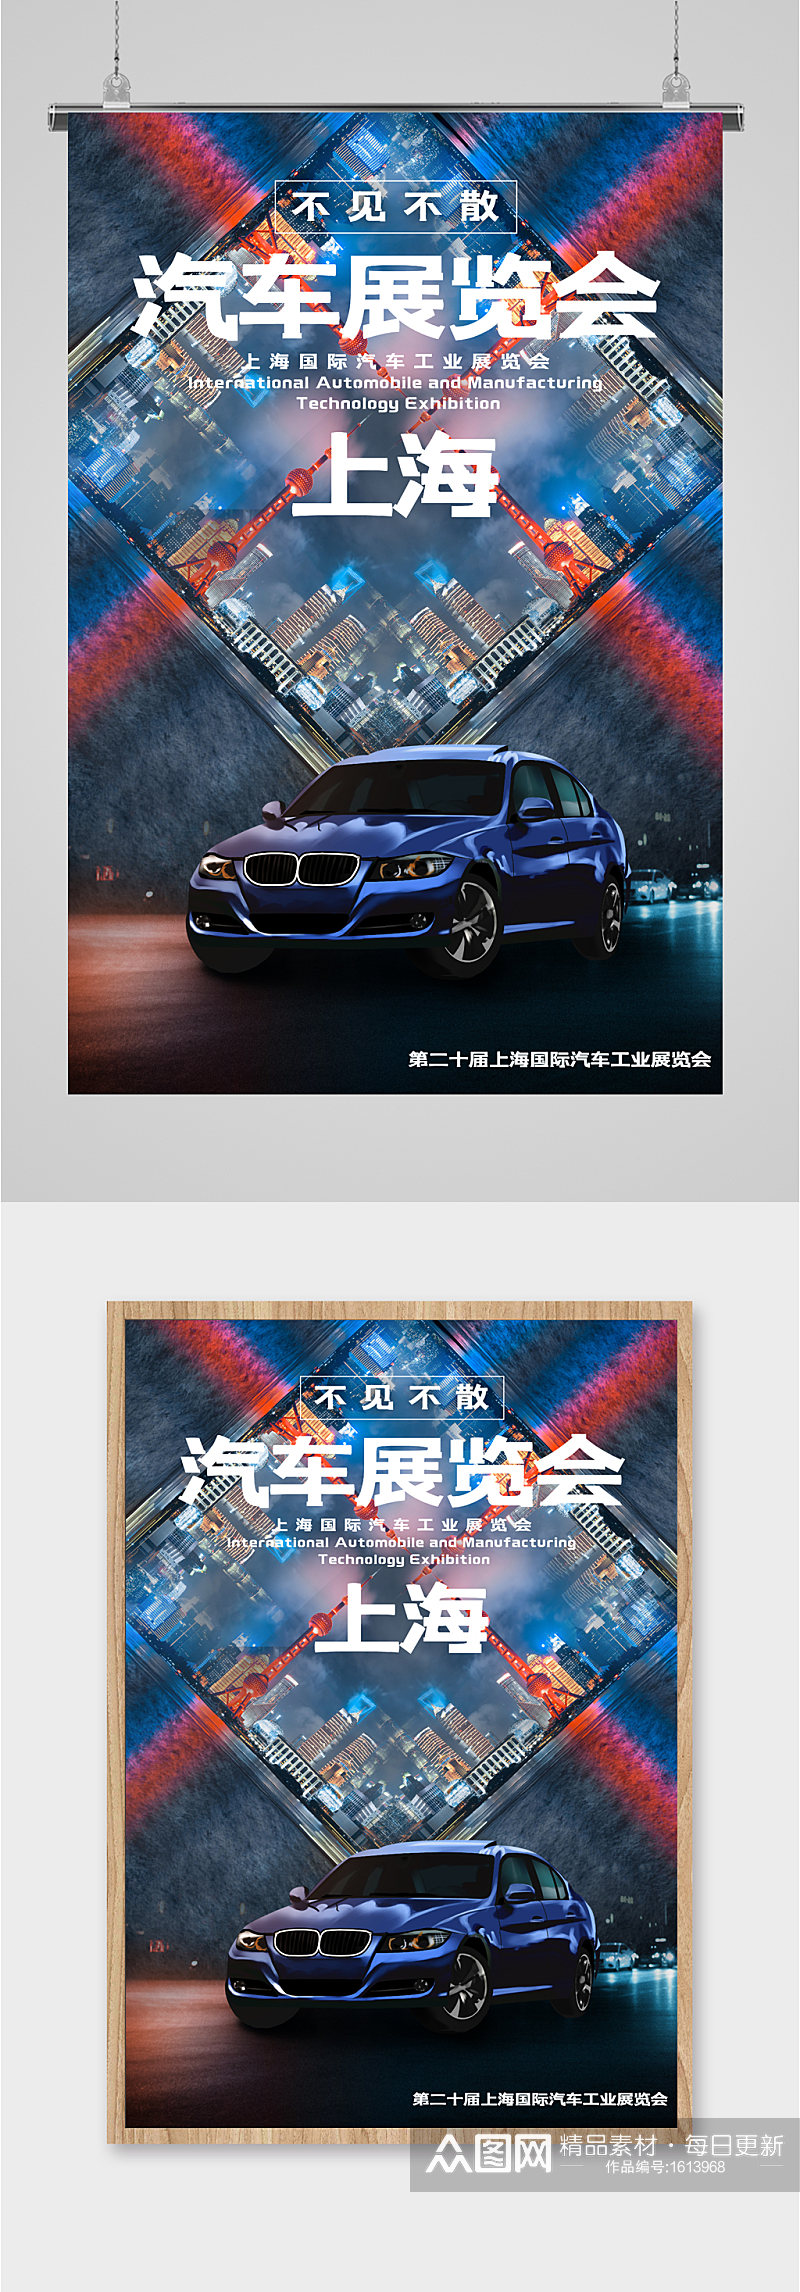 上海汽车展览会大气车展海报素材